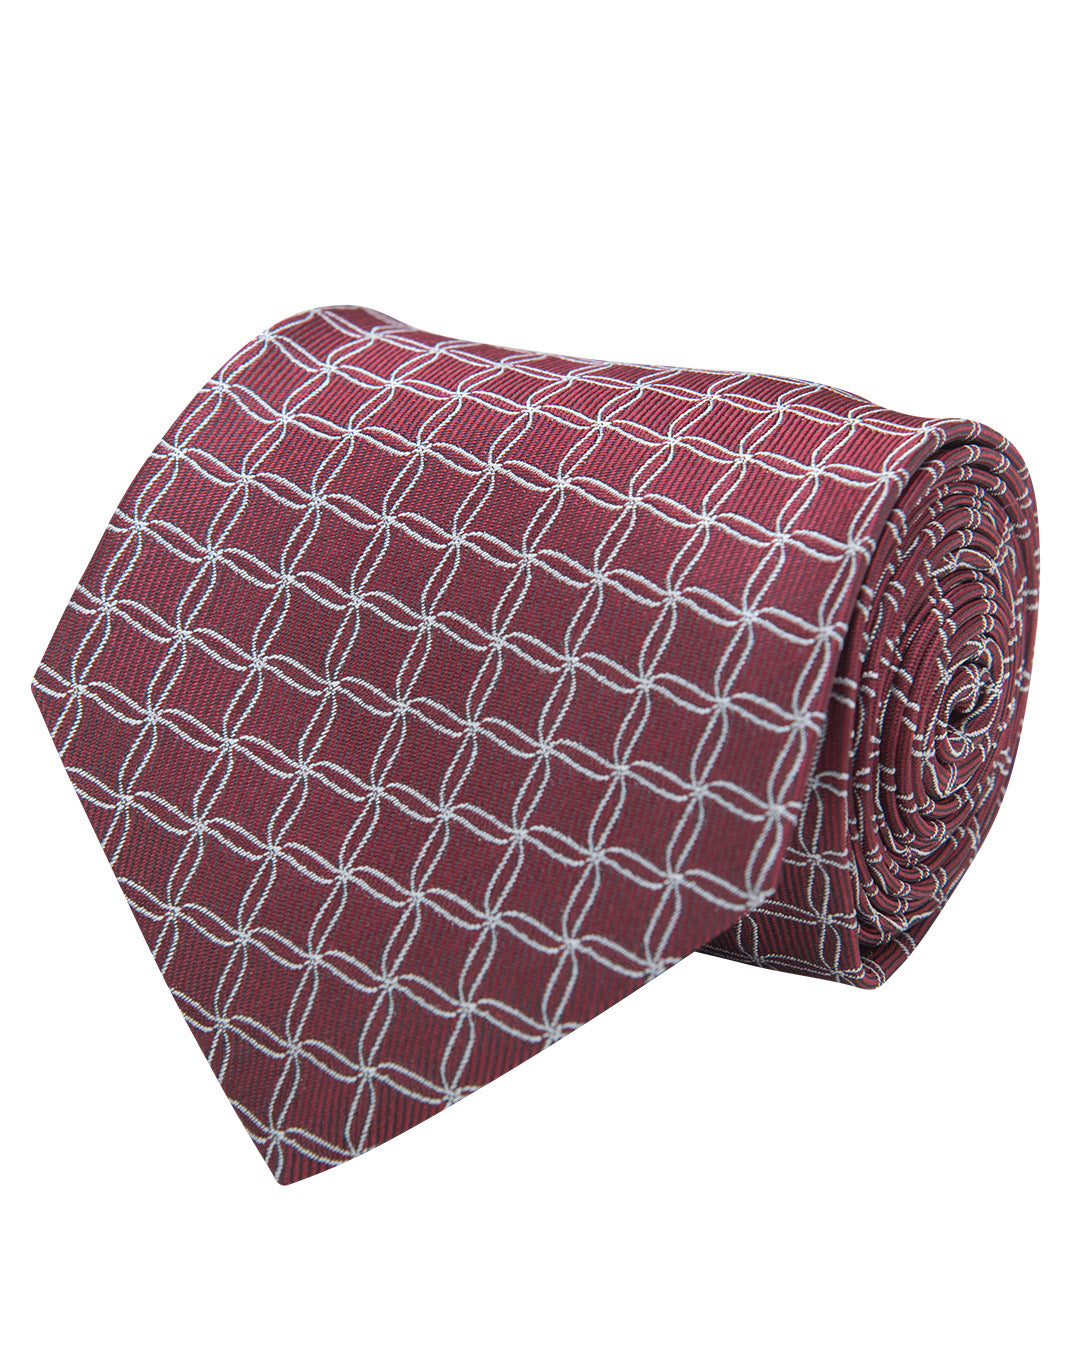 Red Net Pattern Twill Weave Italian Silk Tie